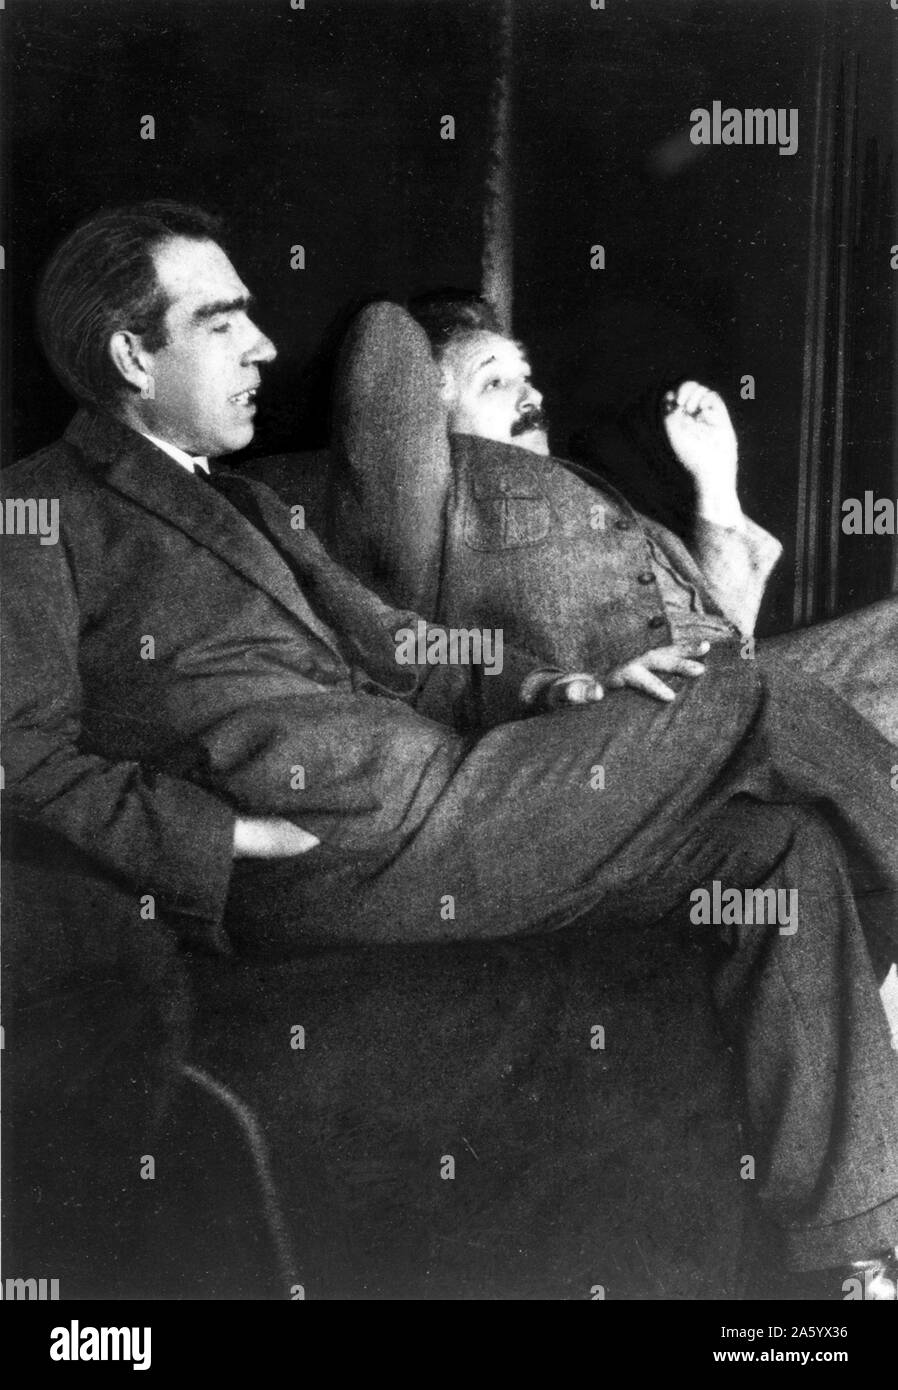 Photographie prise lors d'un débat-Einstein Bohr, une série de conflits publics à propos de la mécanique quantique entre Albert Einstein (1879-1955) physicien théorique d'origine allemande, et Niels Henrik David Bohr (1885-1962) physicien danois. Datée 1925 Banque D'Images